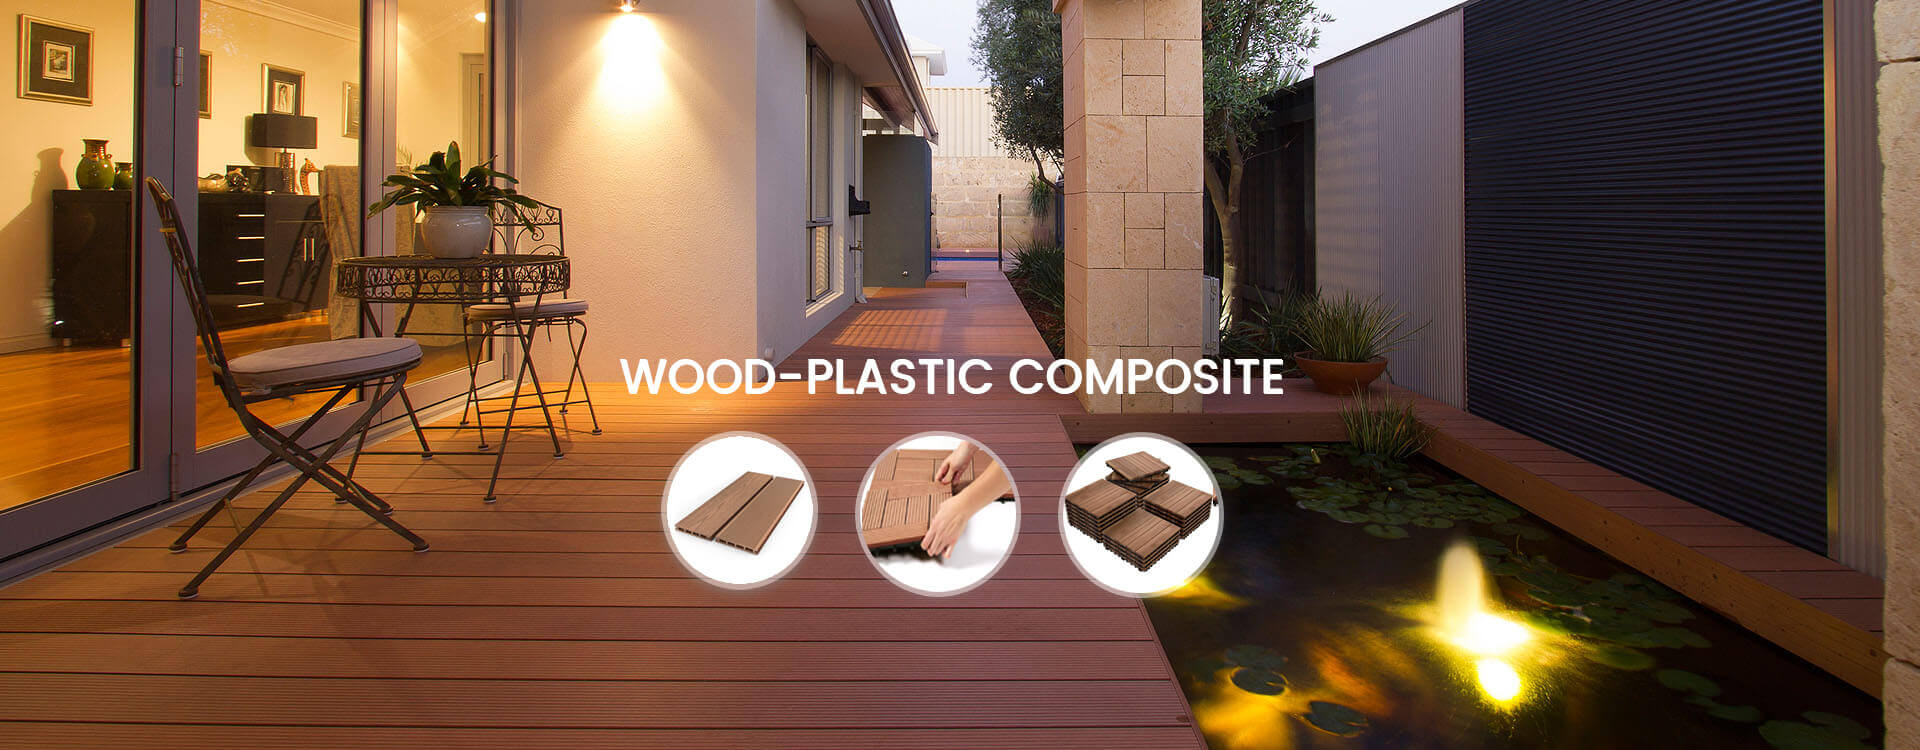 Wood-Plastic Composite